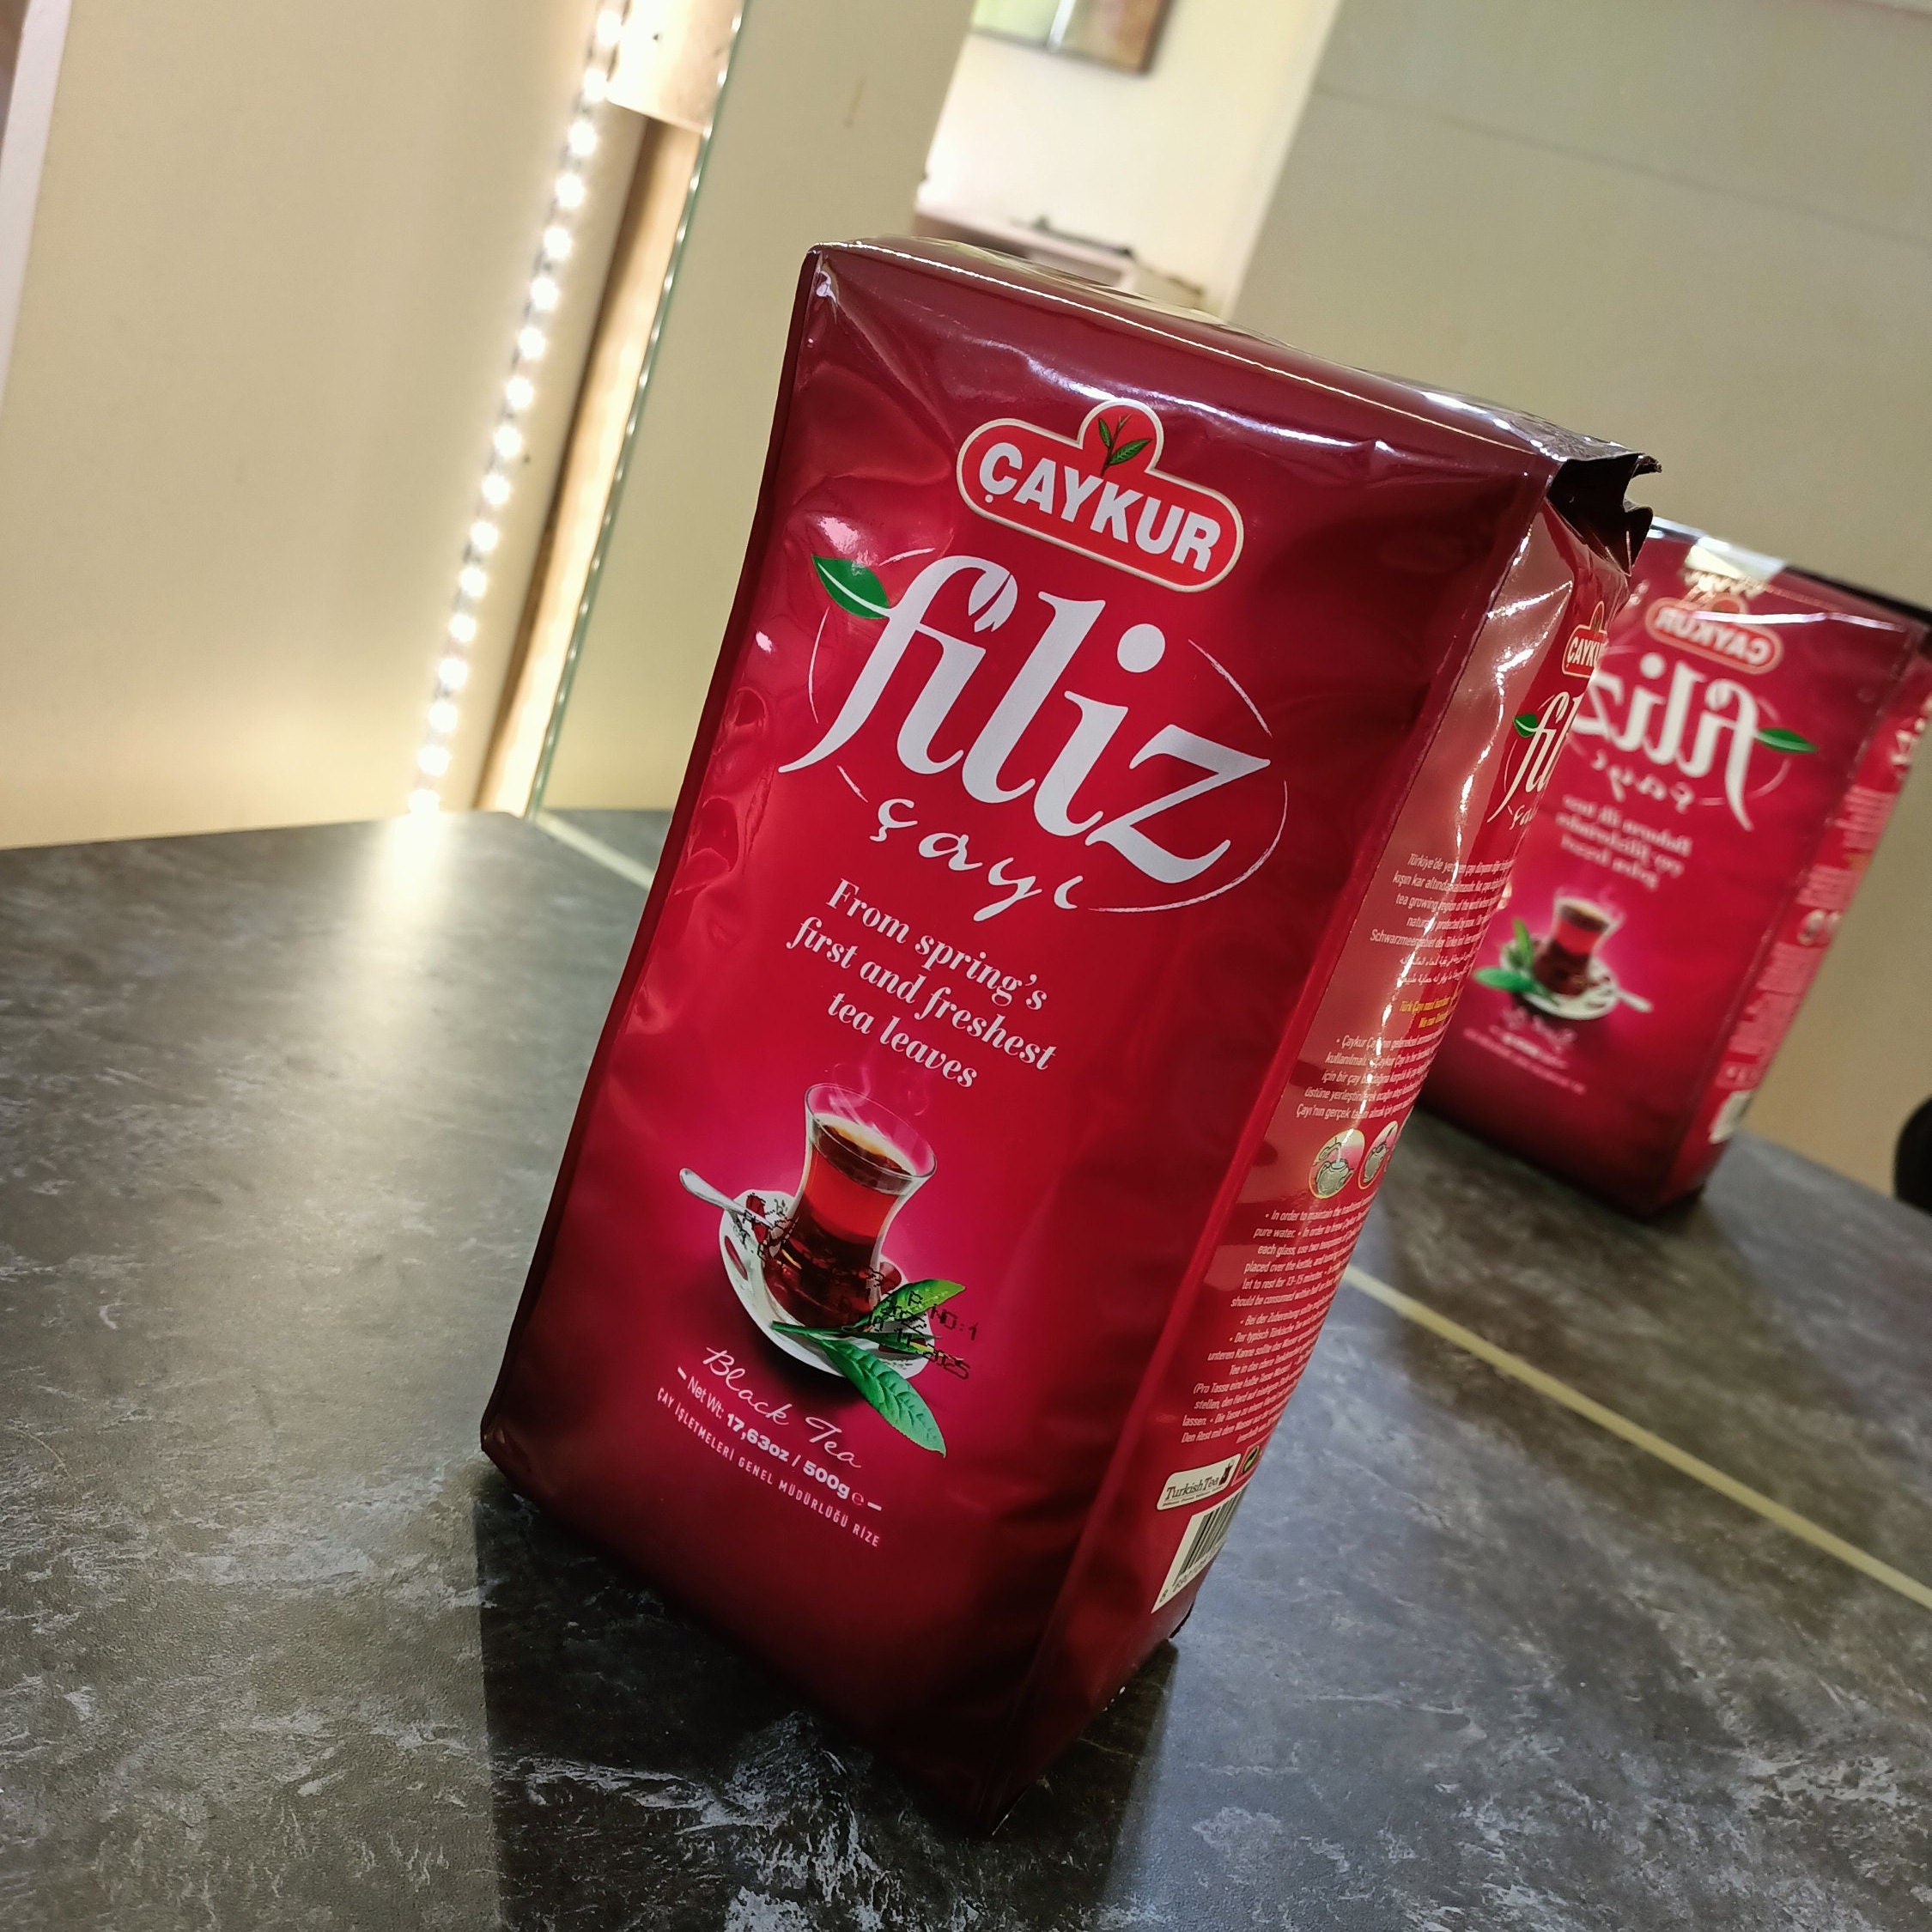 Caykur Rize - tè nero di qualità dalla Turchia (500 g), 1000g : :  Alimentari e cura della casa